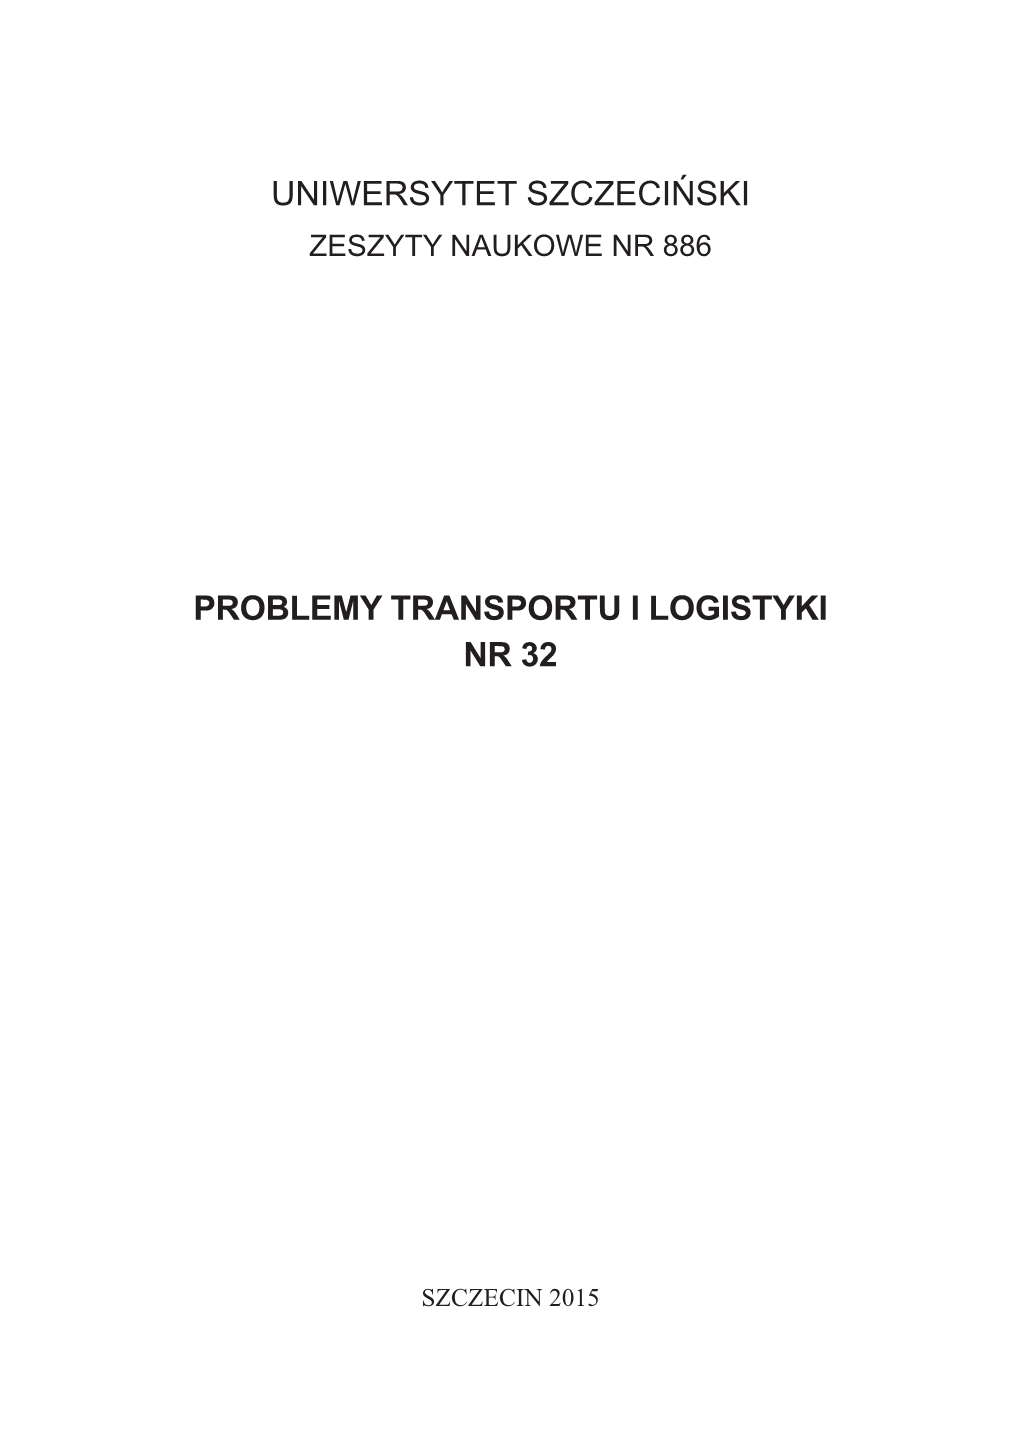 Uniwersytet Szczeciński Problemy Transportu I